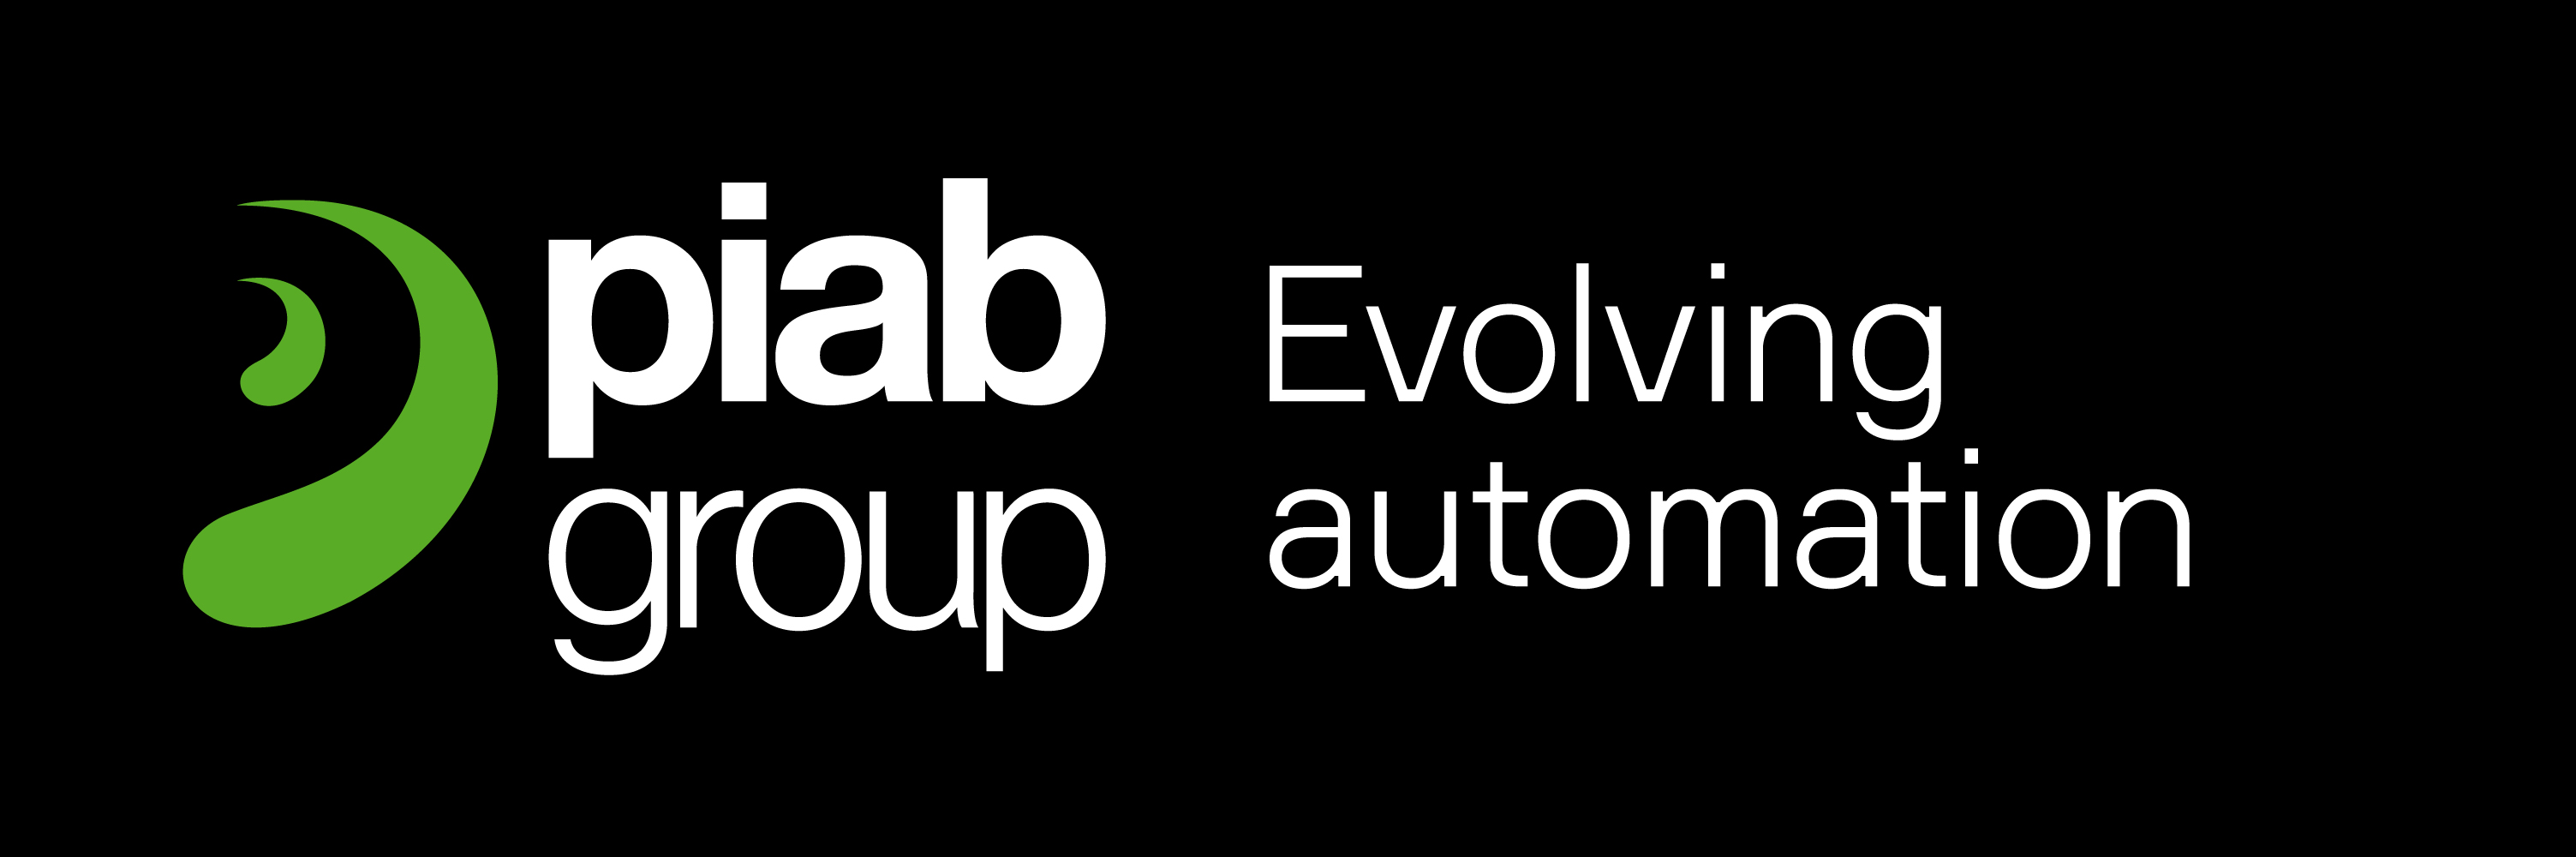 piab-group-tagline-logo_RGB_Negative.jpg